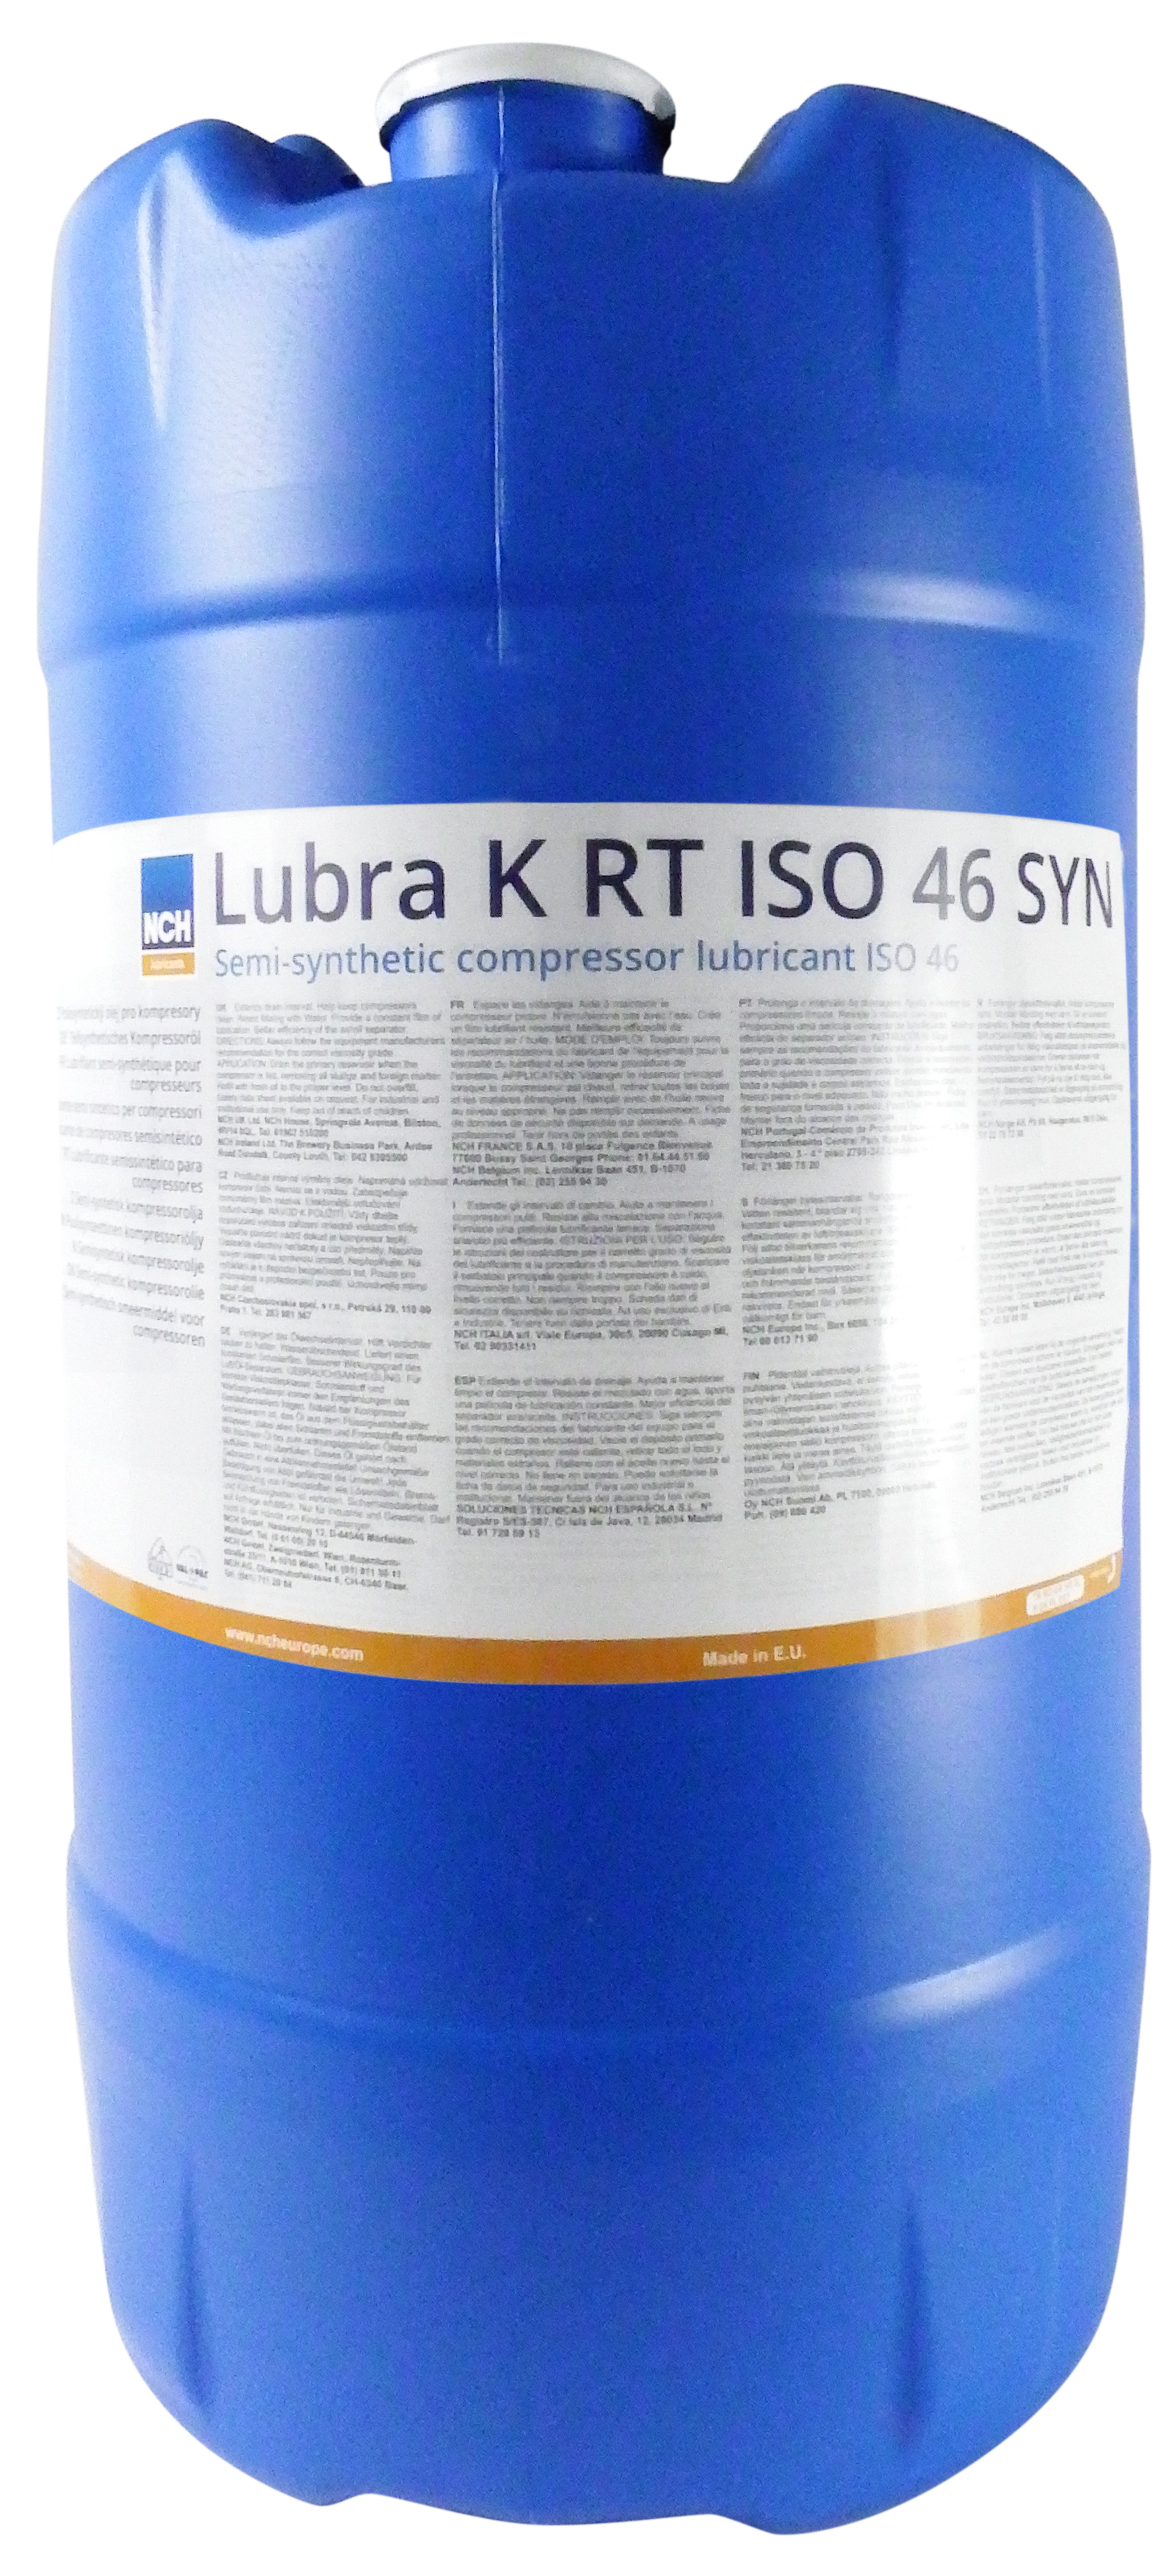 Lubra K RT ISO 46 SYN